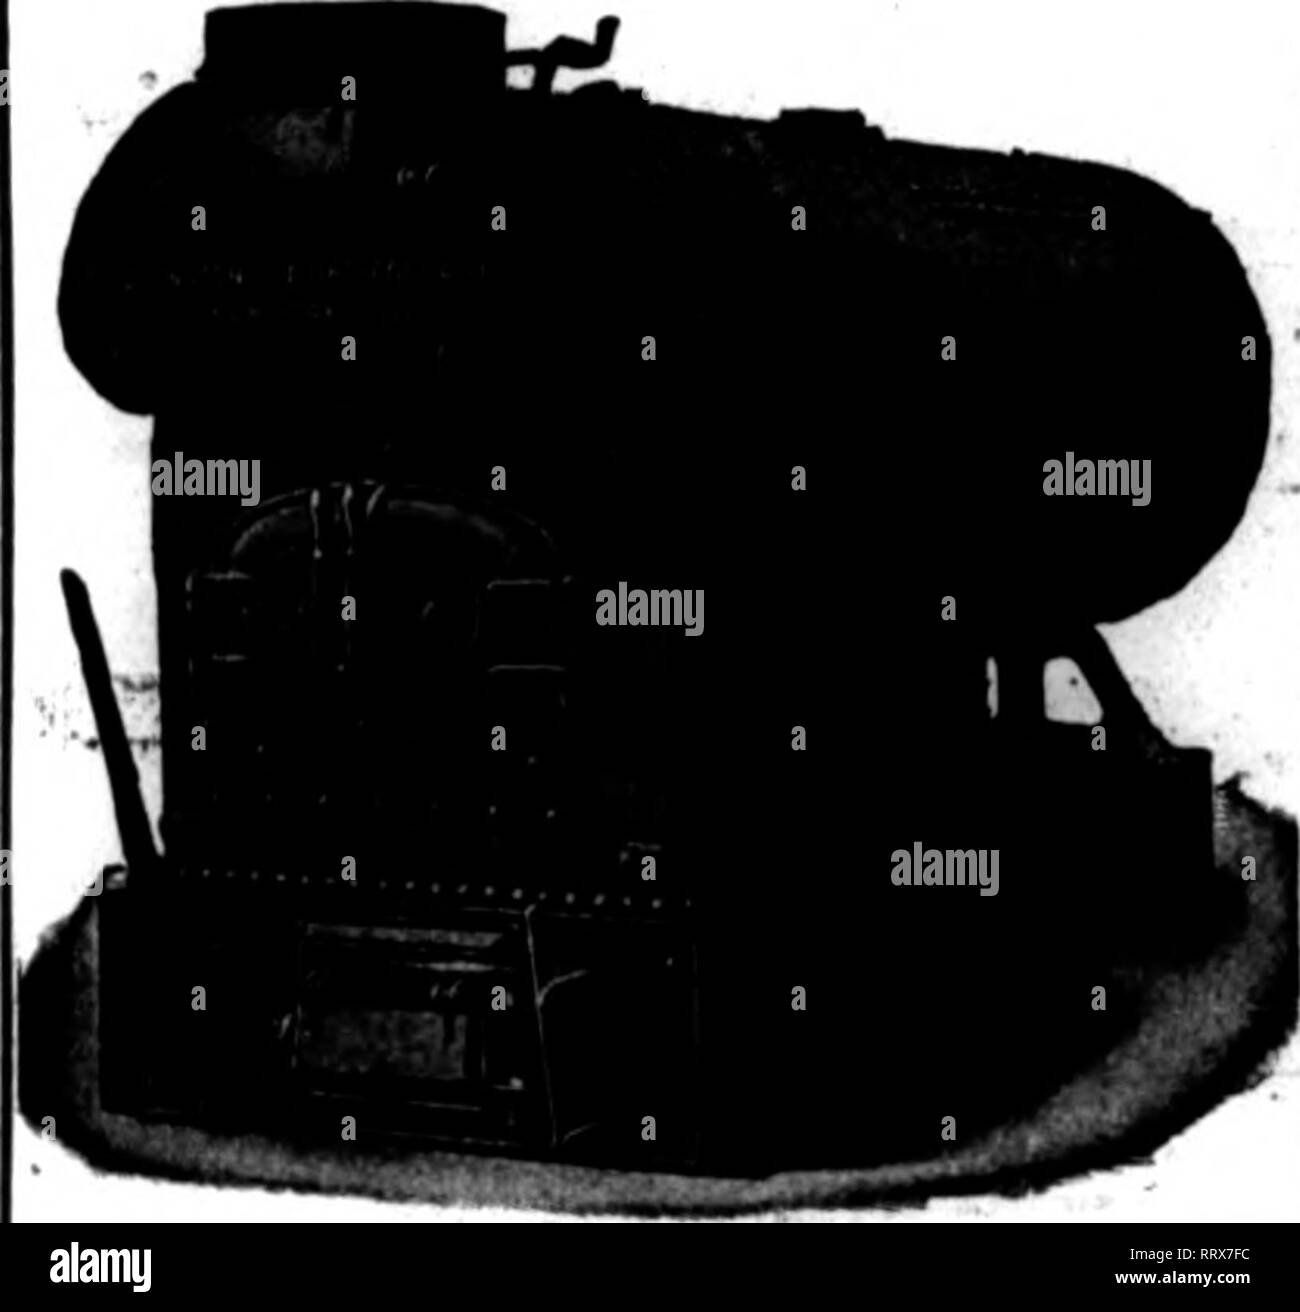 Entreprise de chauffage Banque d'images noir et blanc - Page 3 - Alamy